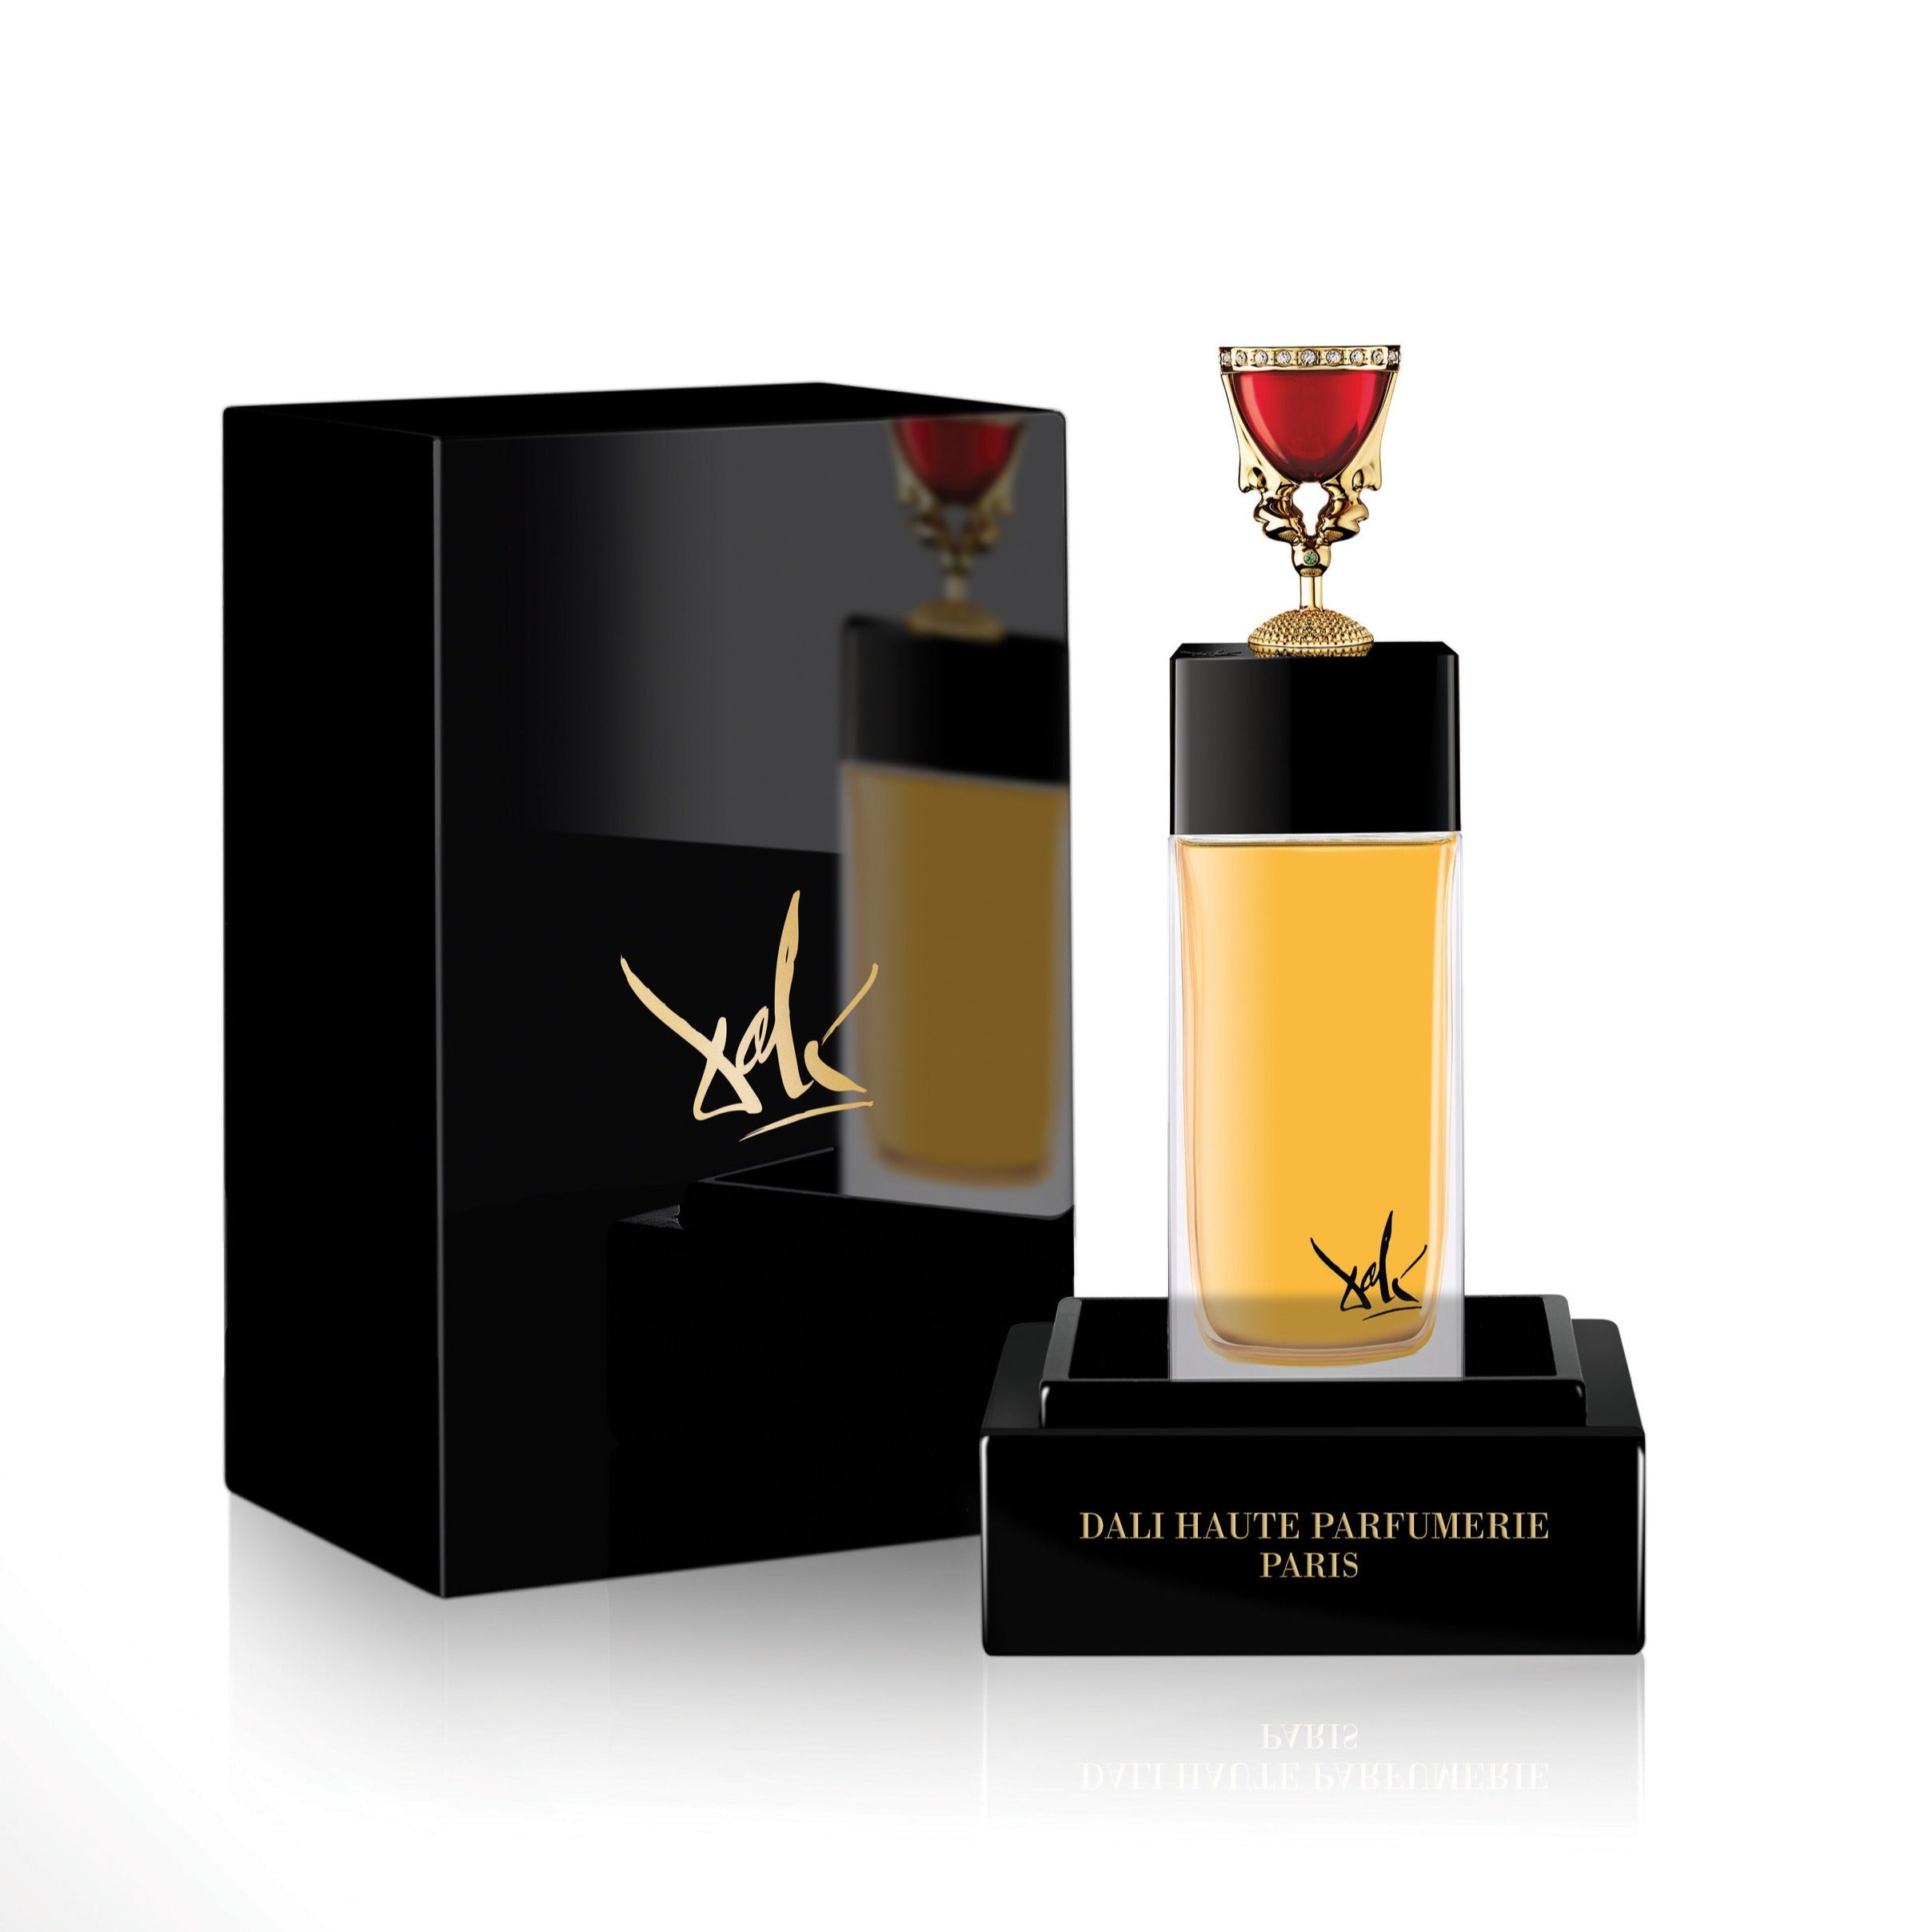 The Chalice 100ml Eau de Parfum Bottle and Box by Dalí Haute Parfumerie